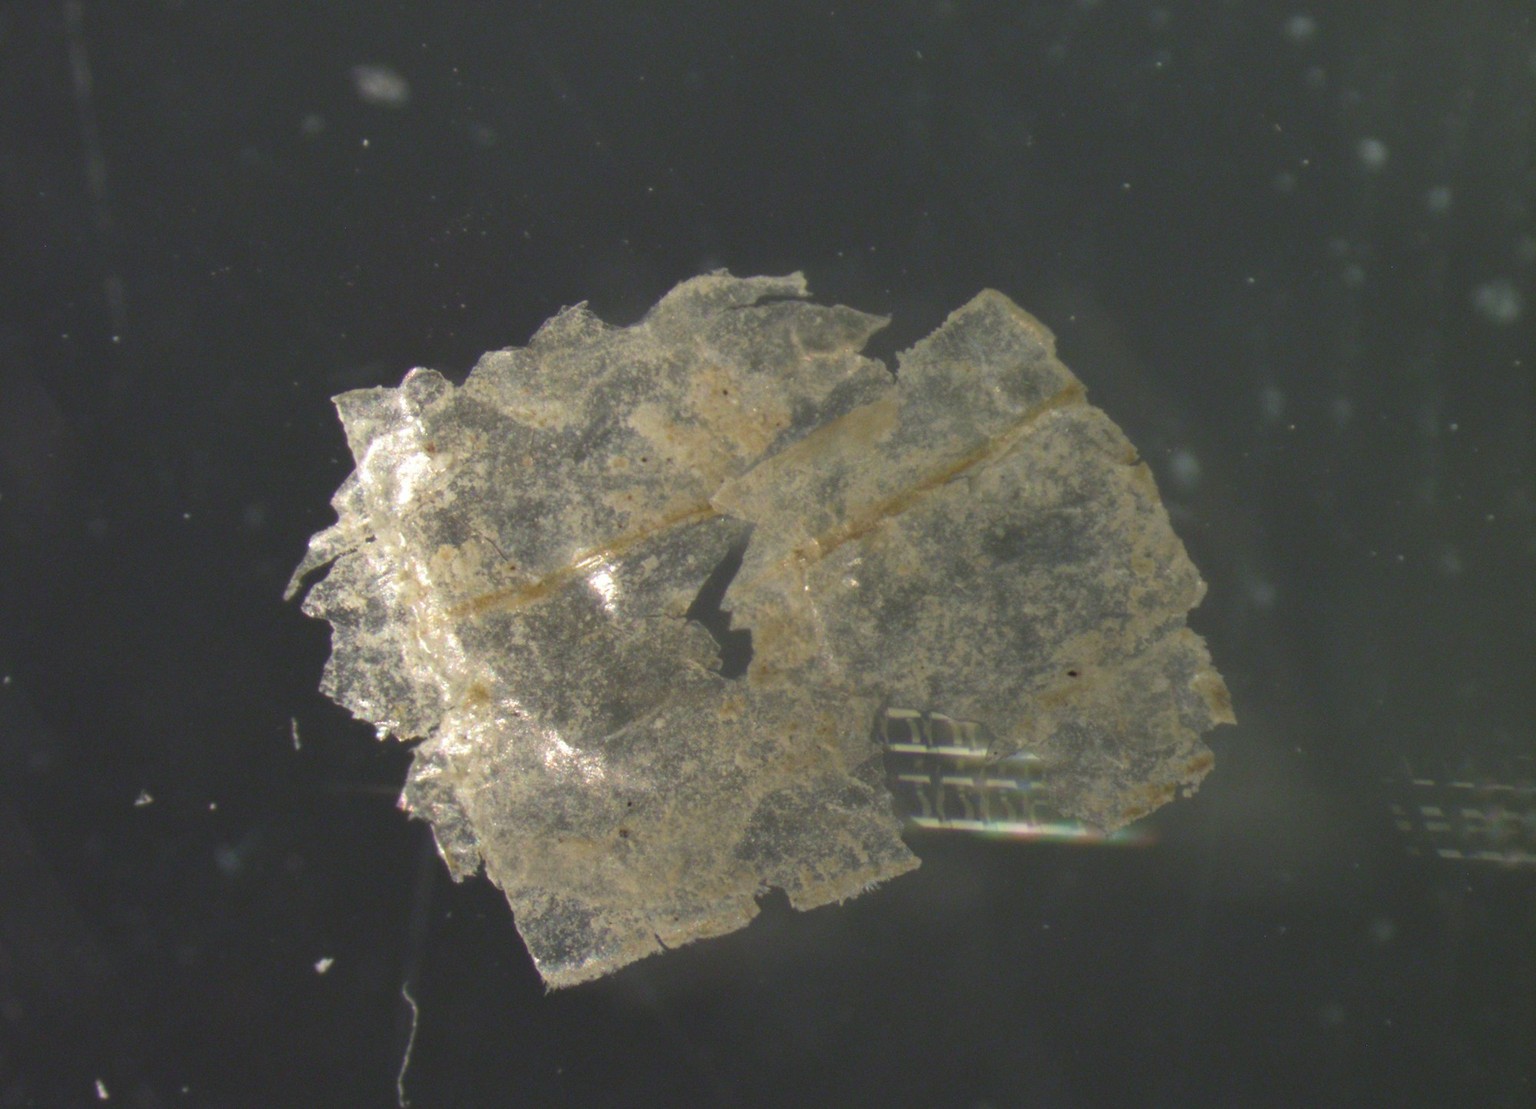 In jeder einzelnen der entnommenen Sedimentproben wiesen die Wissenschaftler*innen Mikroplastik-Teilchen nach – pro Kilogramm Sediment zwischen 215 und 1596 Partikel.